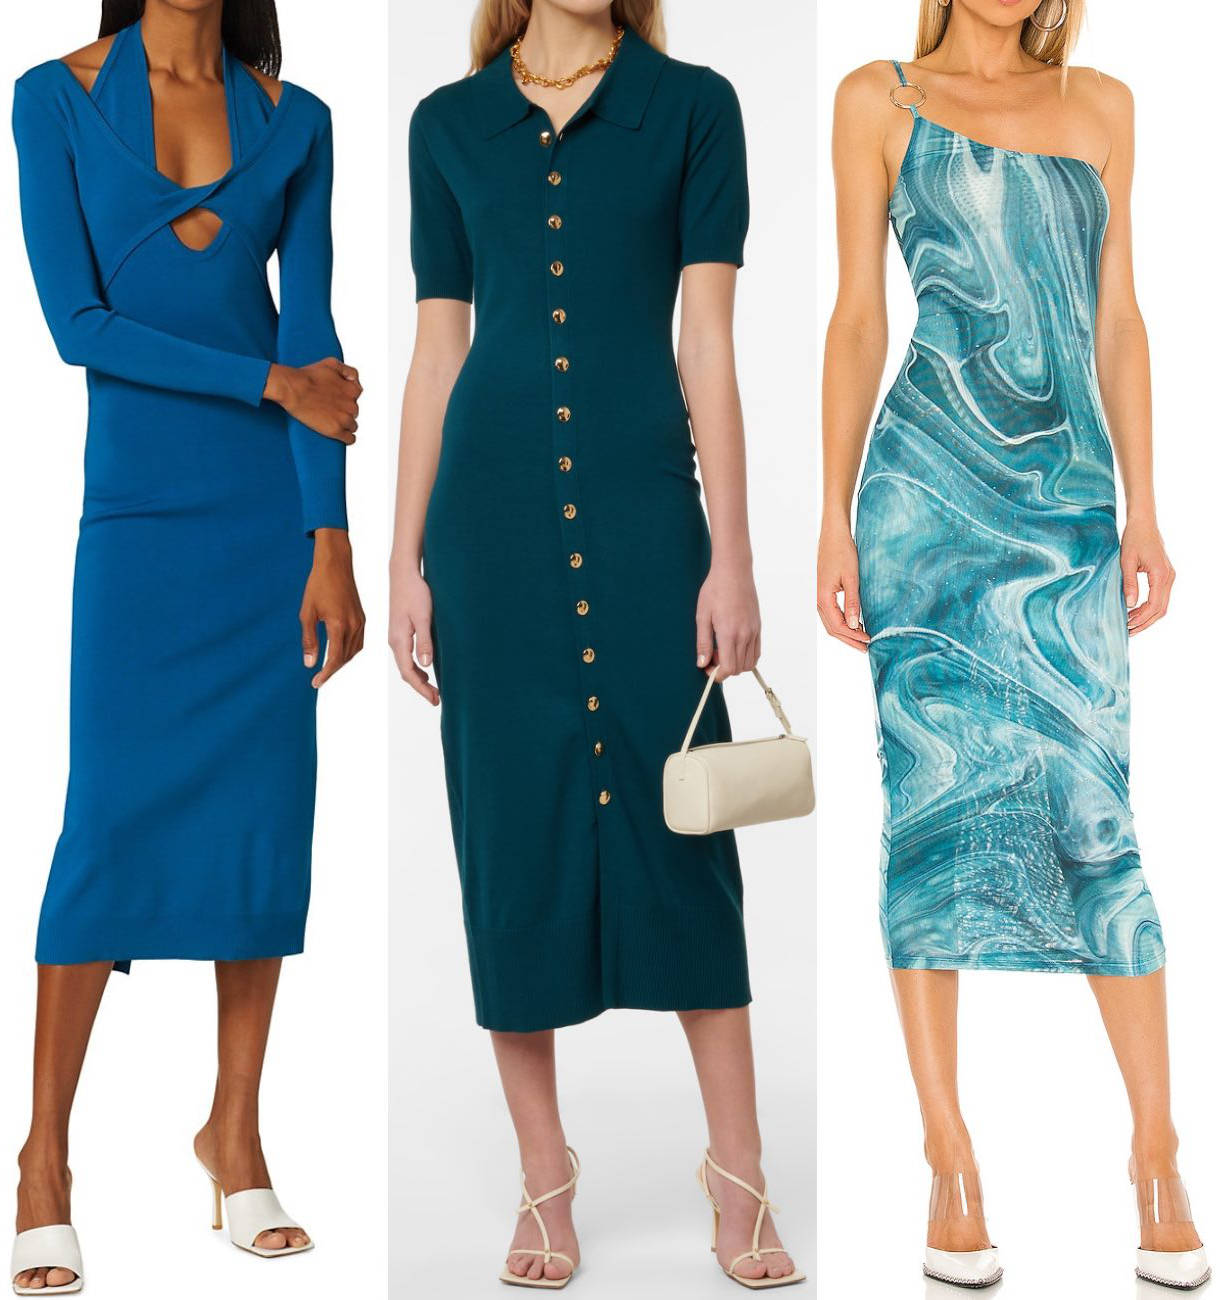 What colour shoes should you wear with aqua suit? | Dresses Images 2022